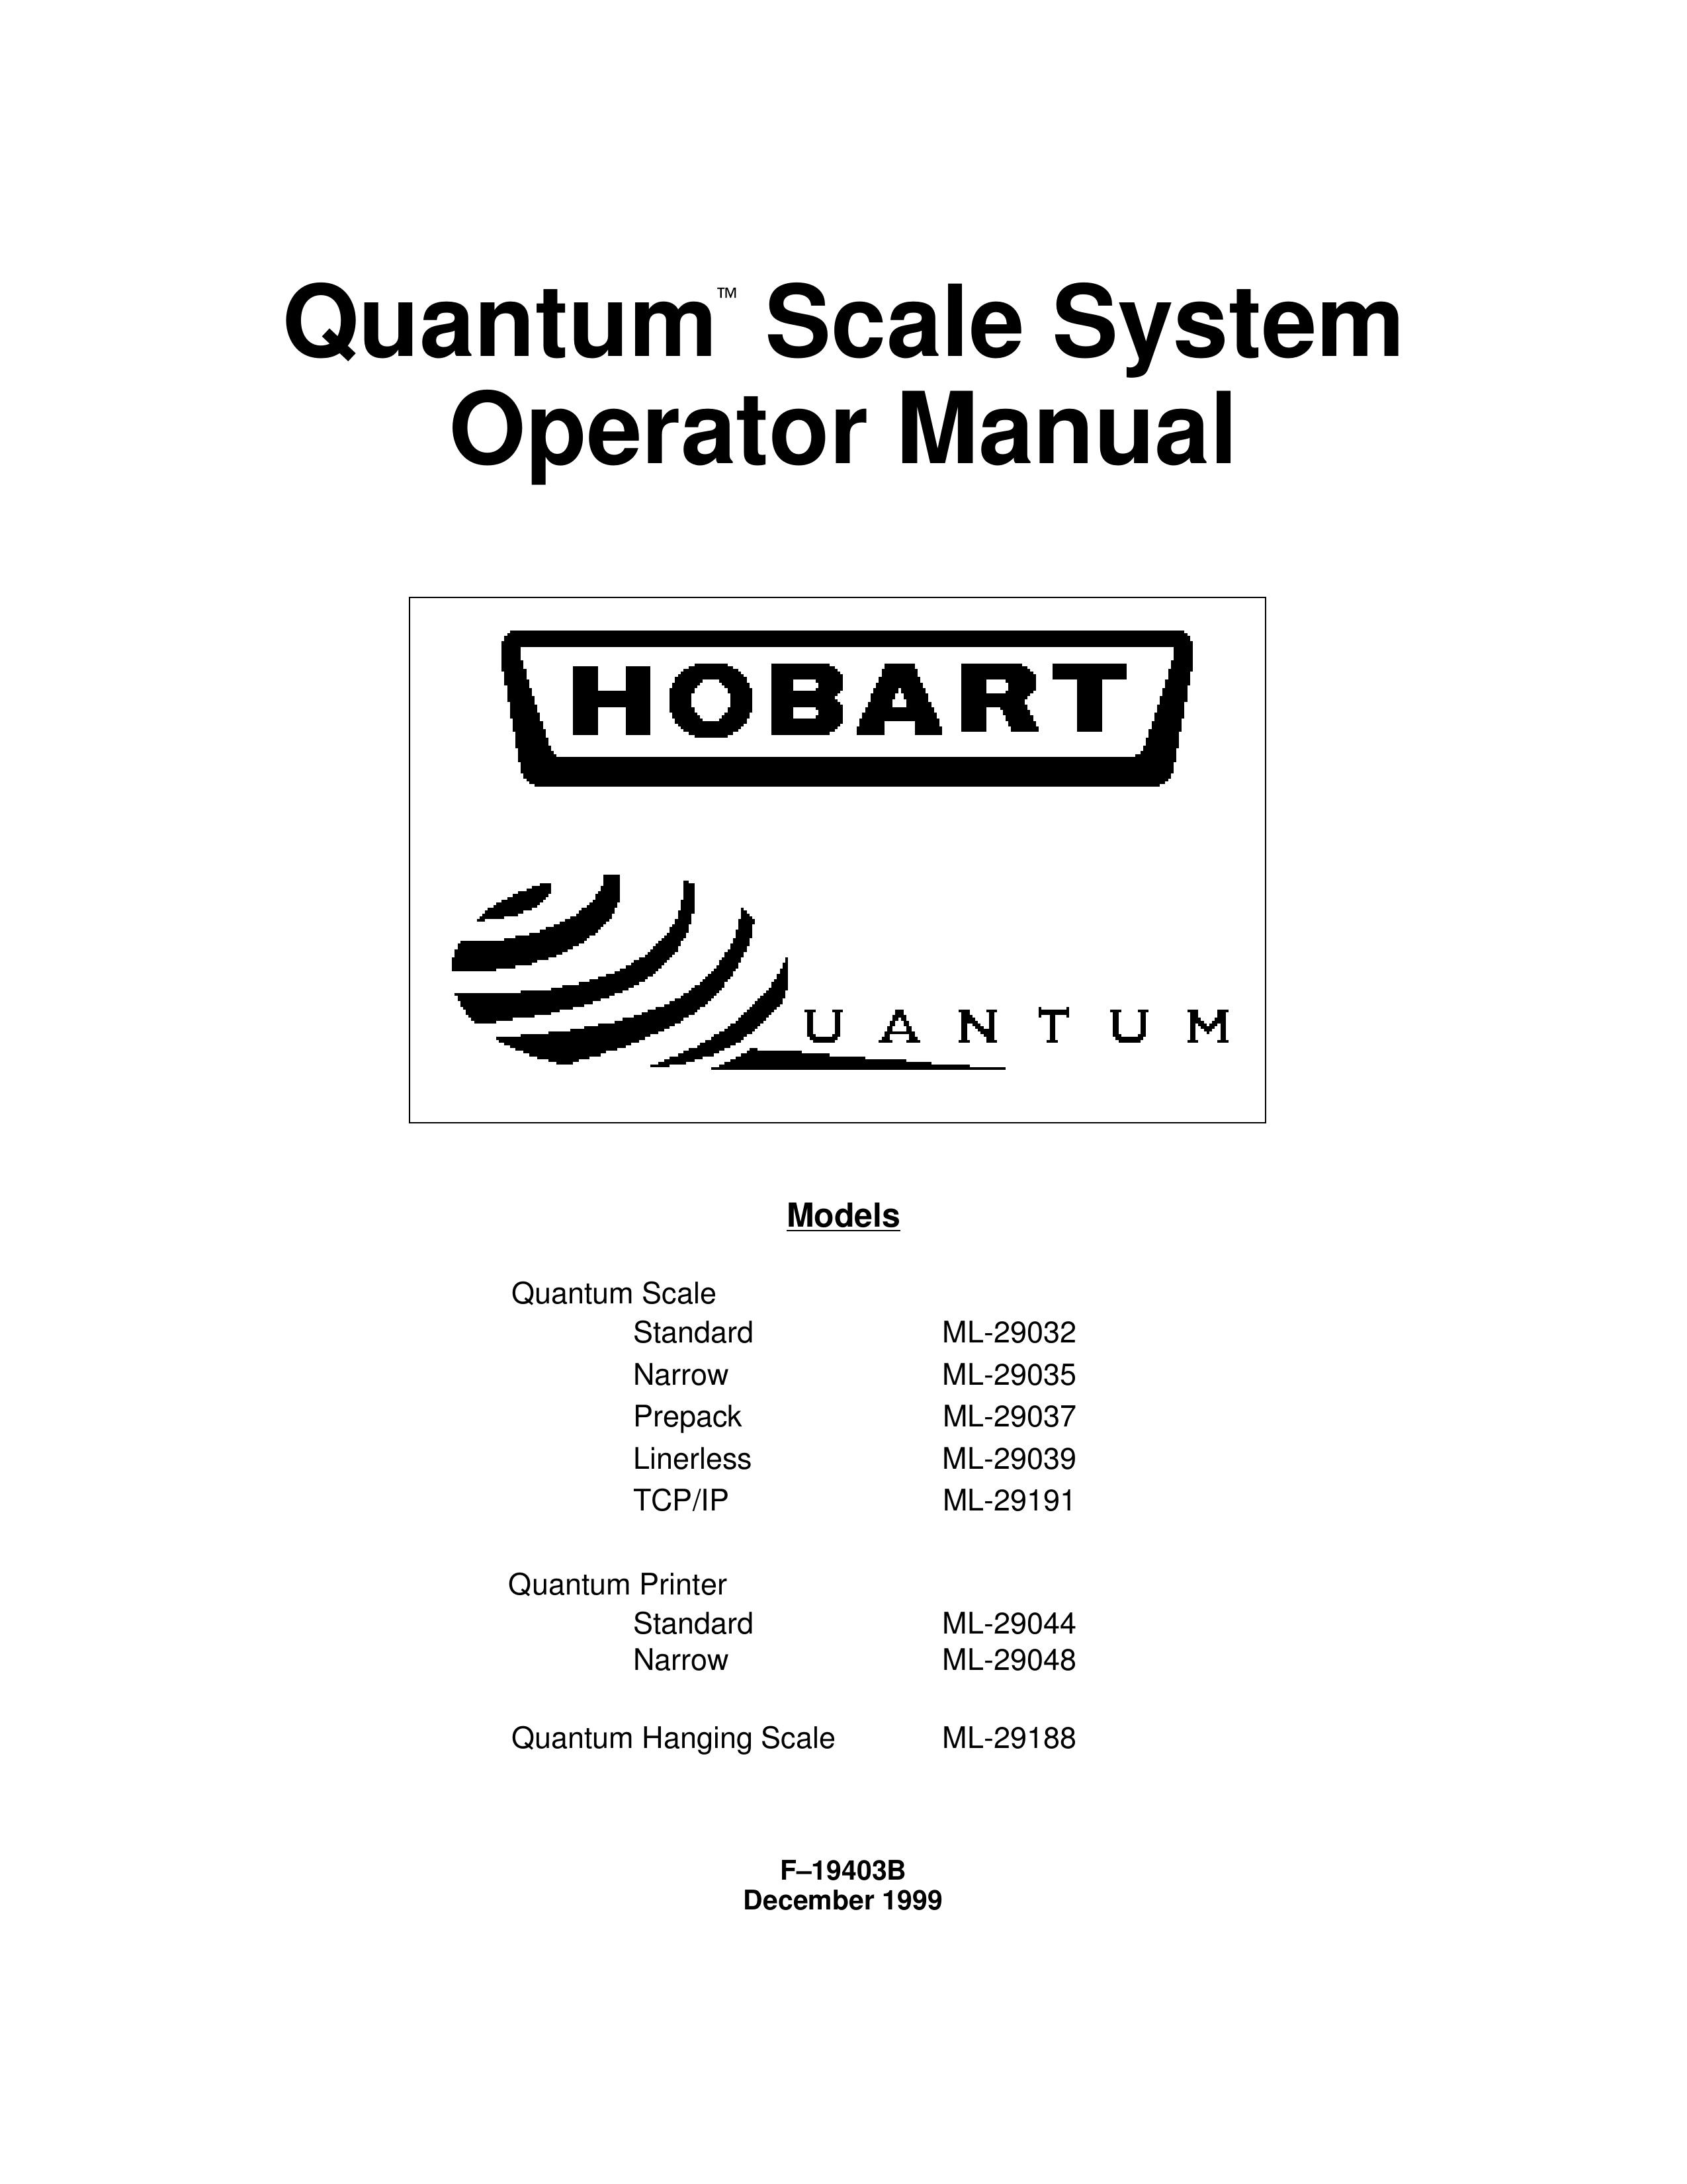 Hobart ML-29191 Scale User Manual